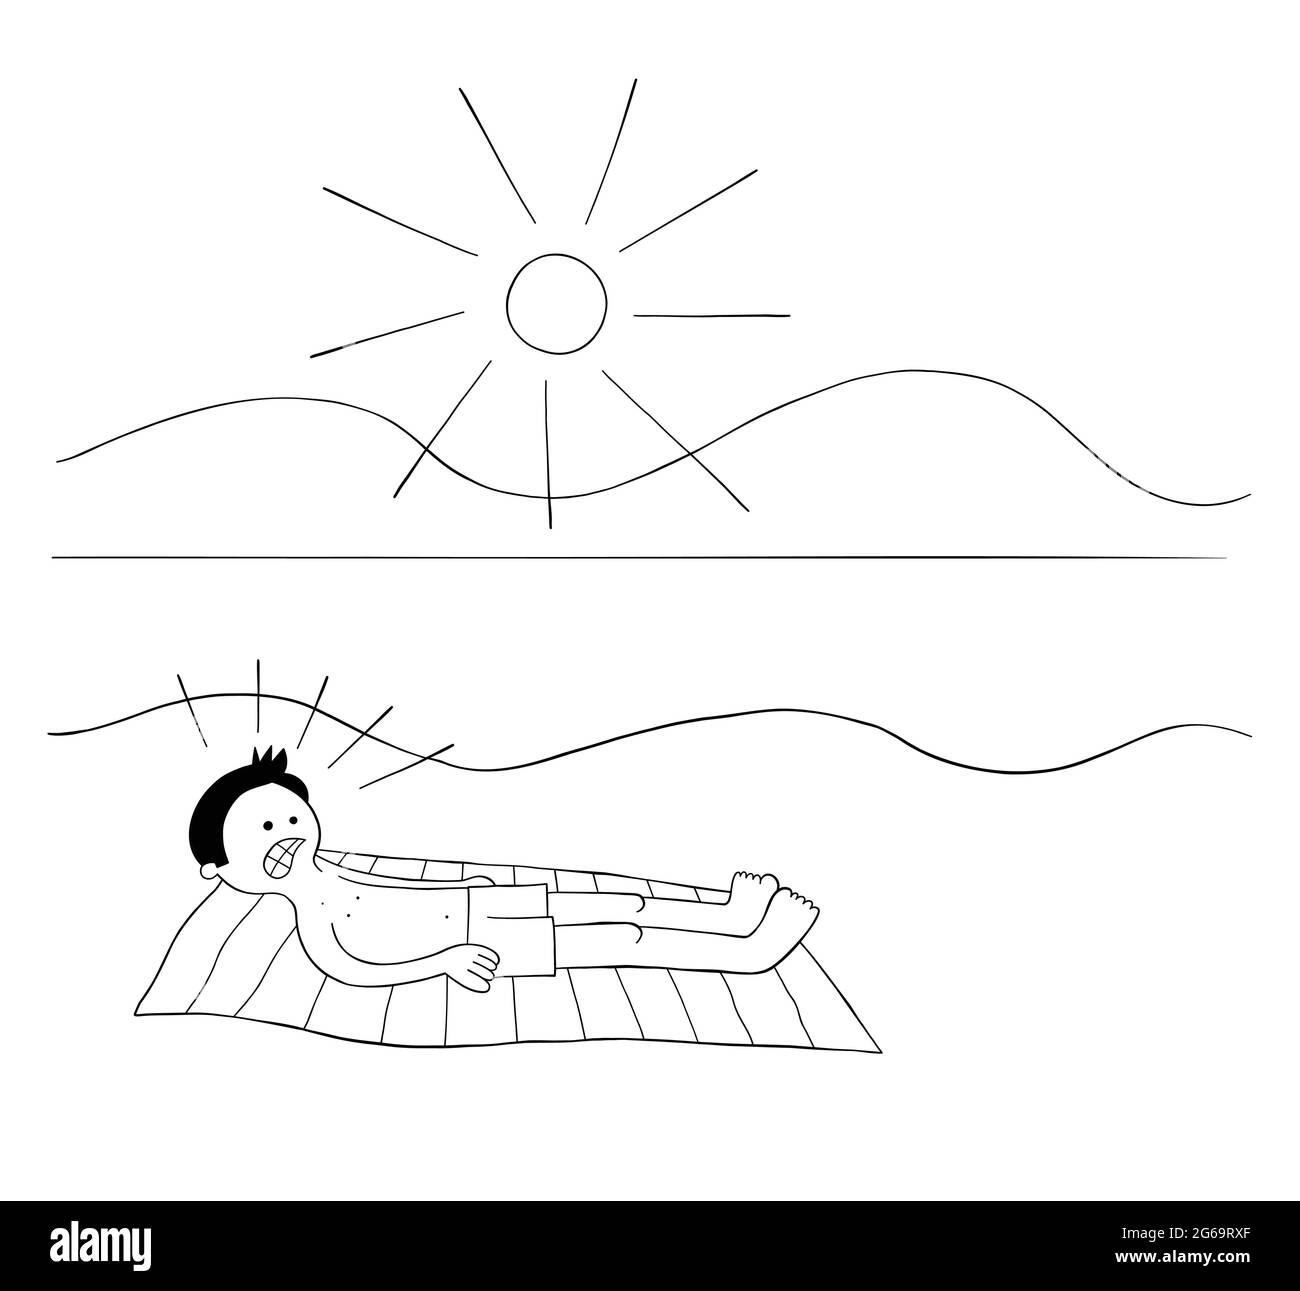 Cartoon Mann Sonnenbaden am Strand für Stunden und wenn er aufwacht seinen ganzen Körper ist rot Vektor Illustration verbrannt. Schwarz umrandet und weiß gefärbt. Stock Vektor